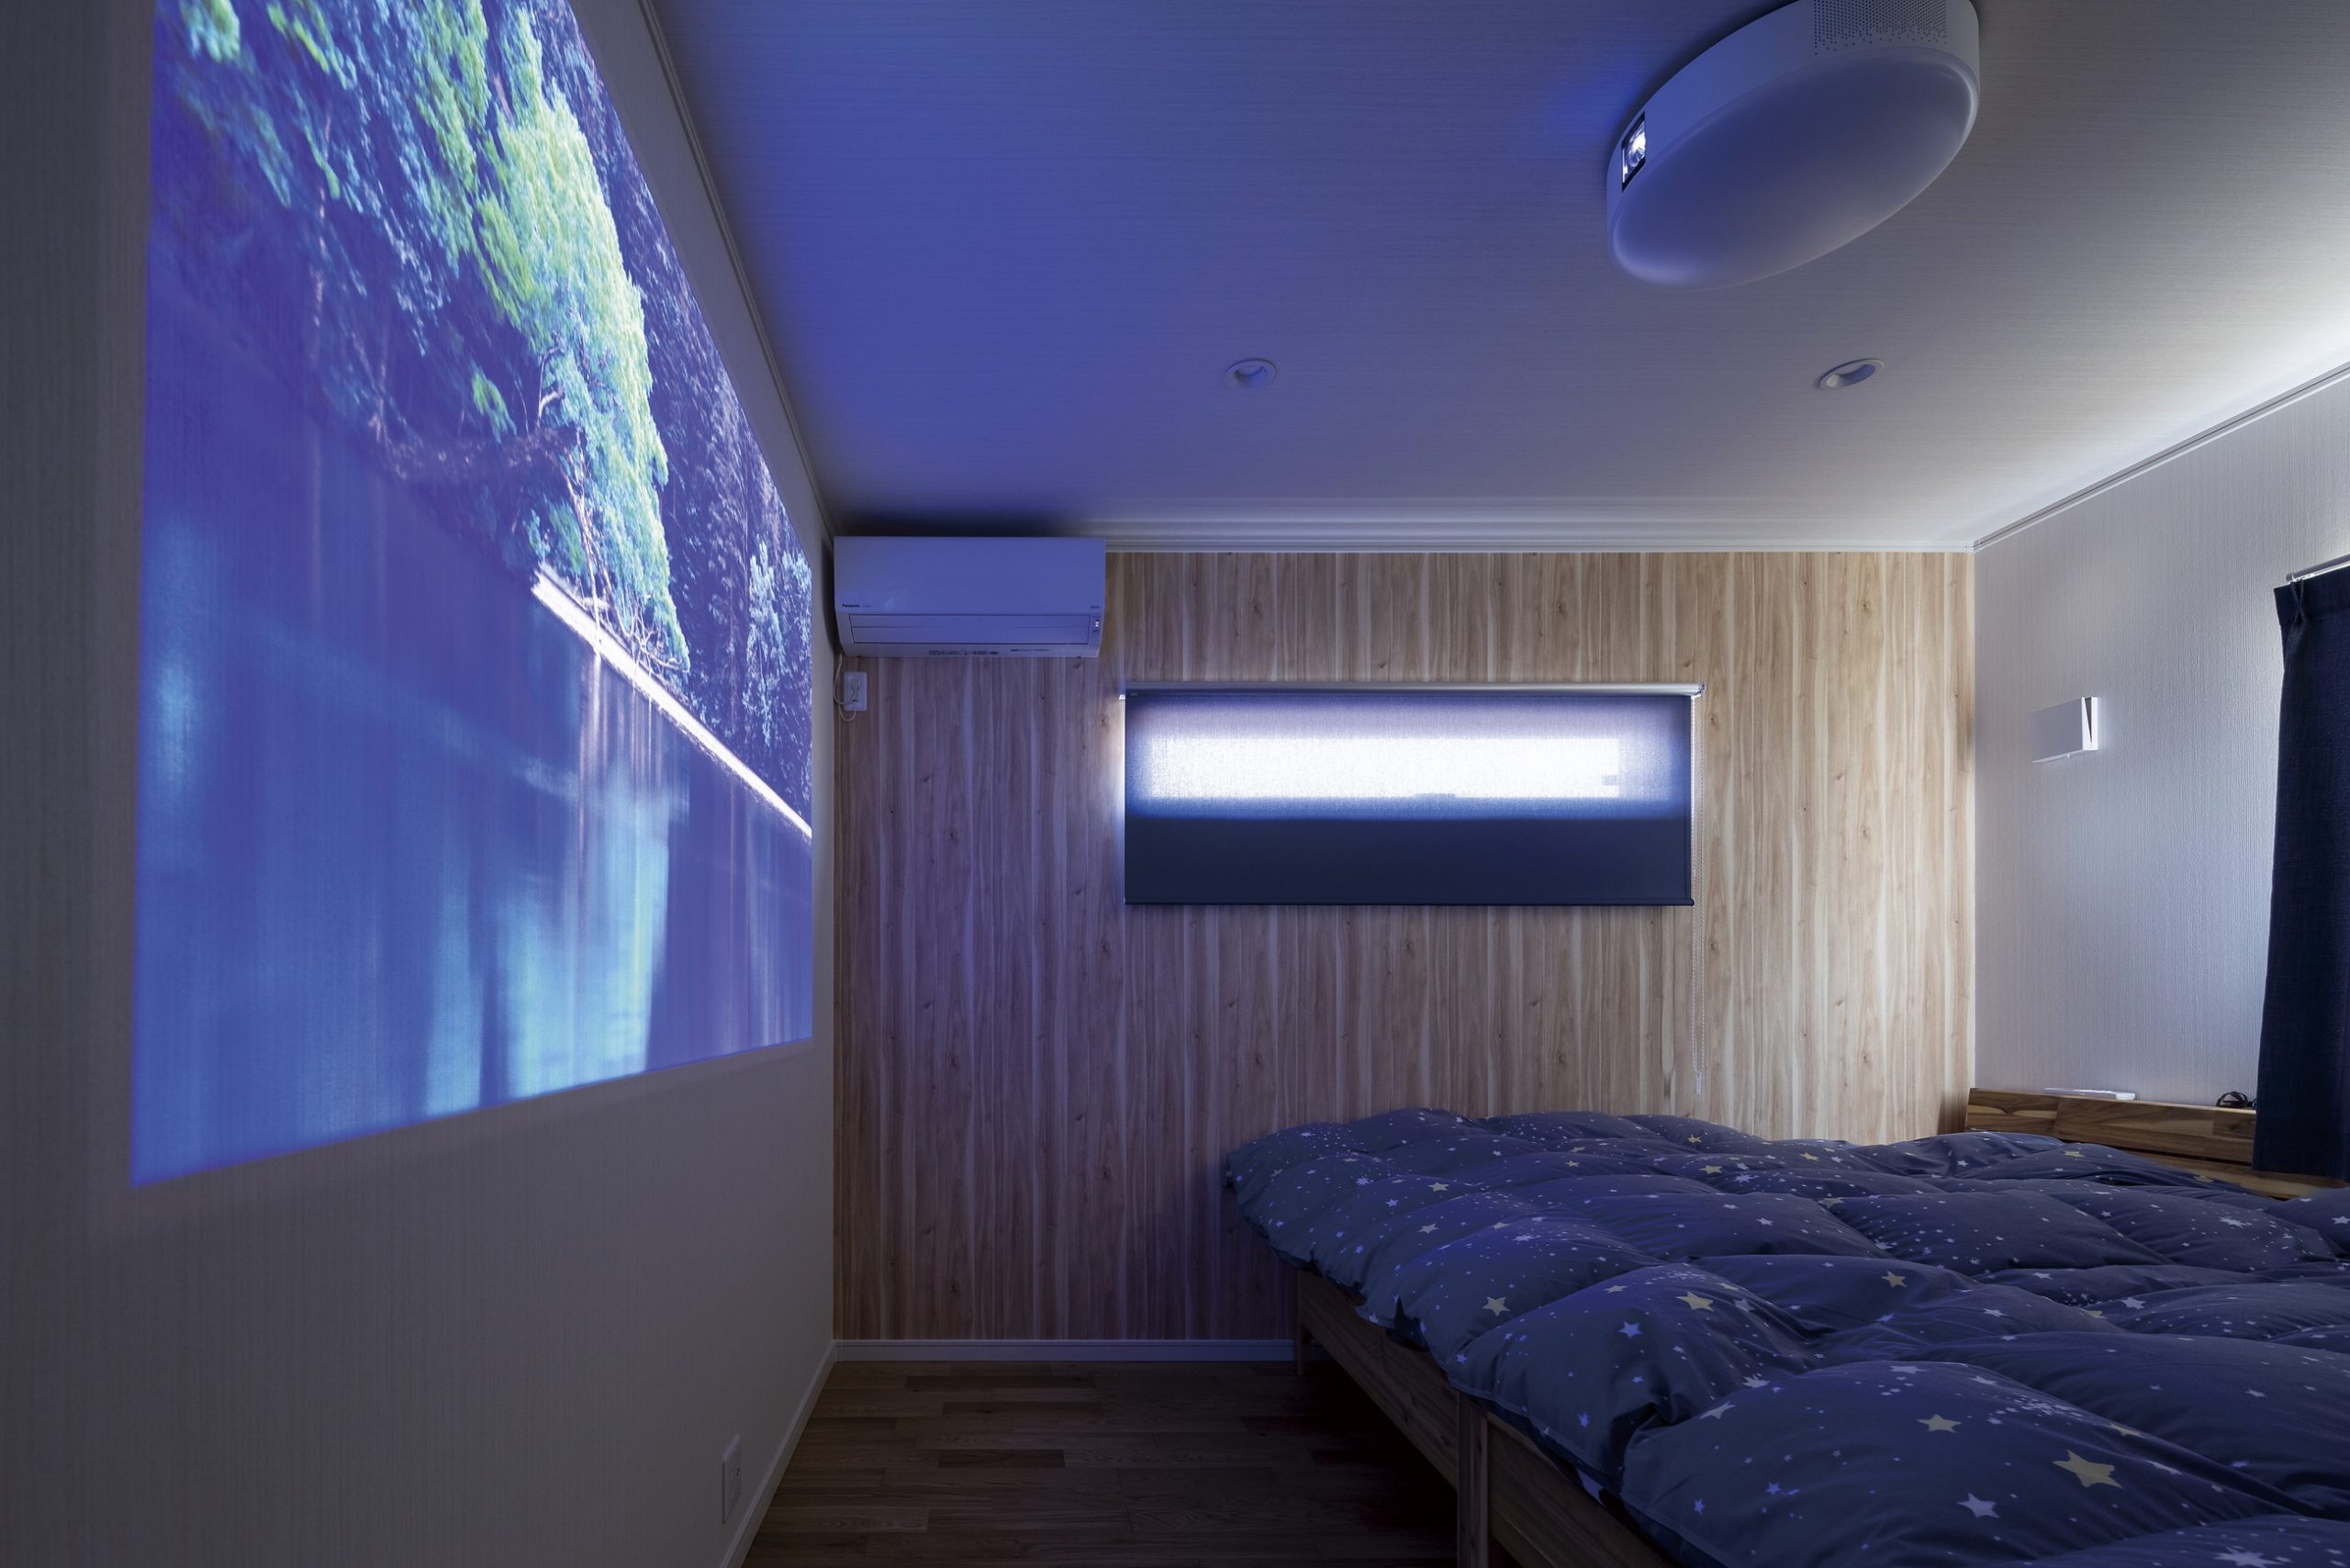 30 40坪の平屋にちょうどいい6 8畳の寝室レイアウト ライフスタイルから考える茨城の快適な間取りづくり 不二建設